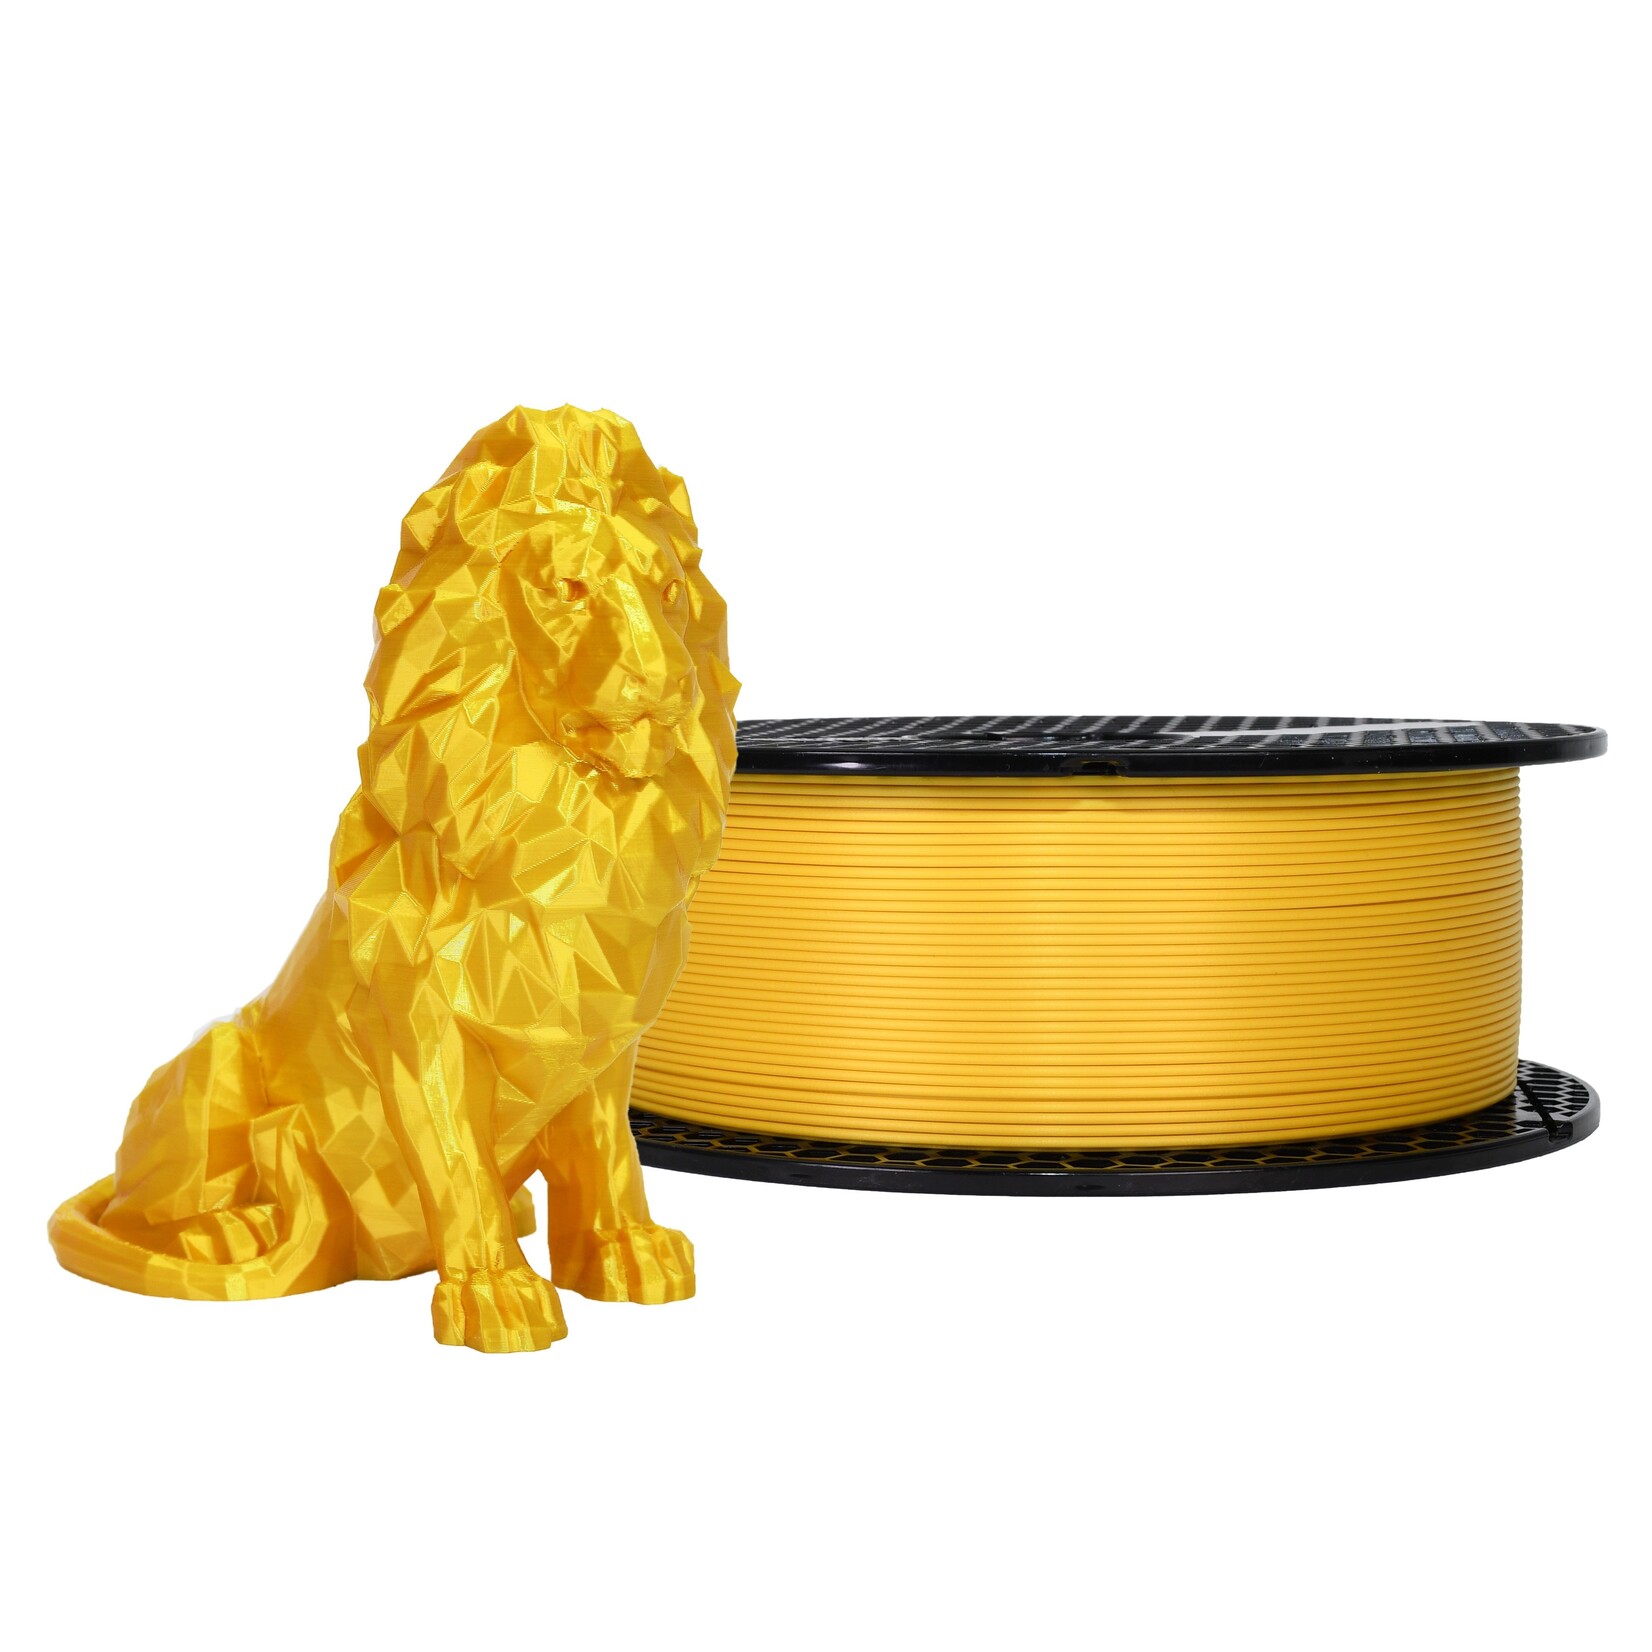 Prusa Research 1.75mm PLA 3d printer filament Prusament oh my gold (blend) 970g